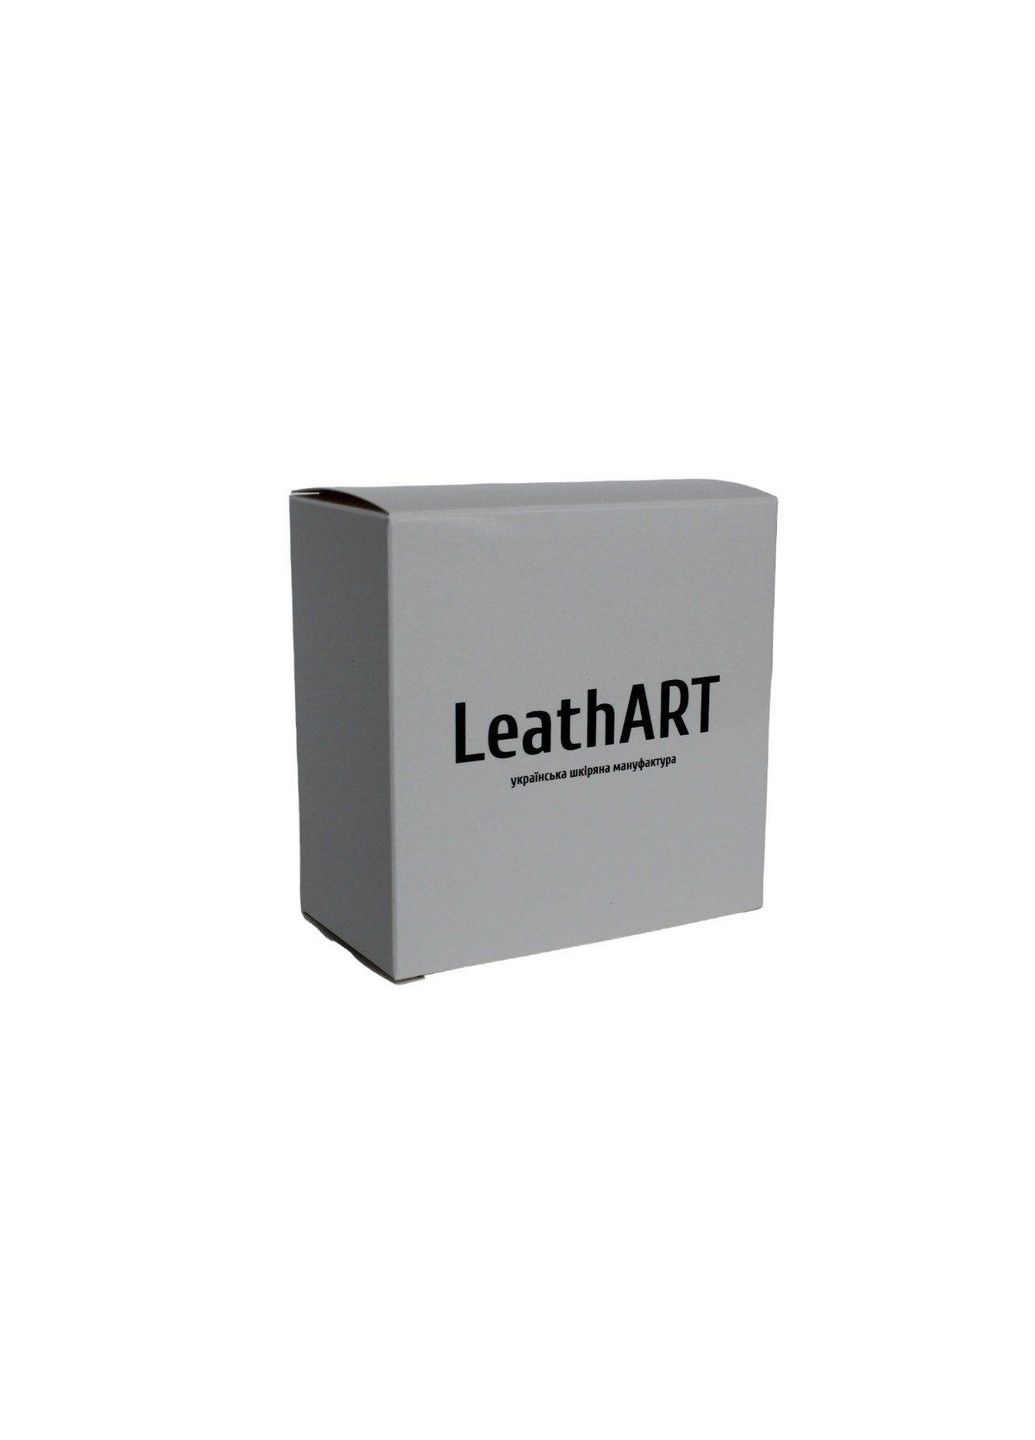 Мужской кожаный ремень 110-130 см LeathART (275073070)